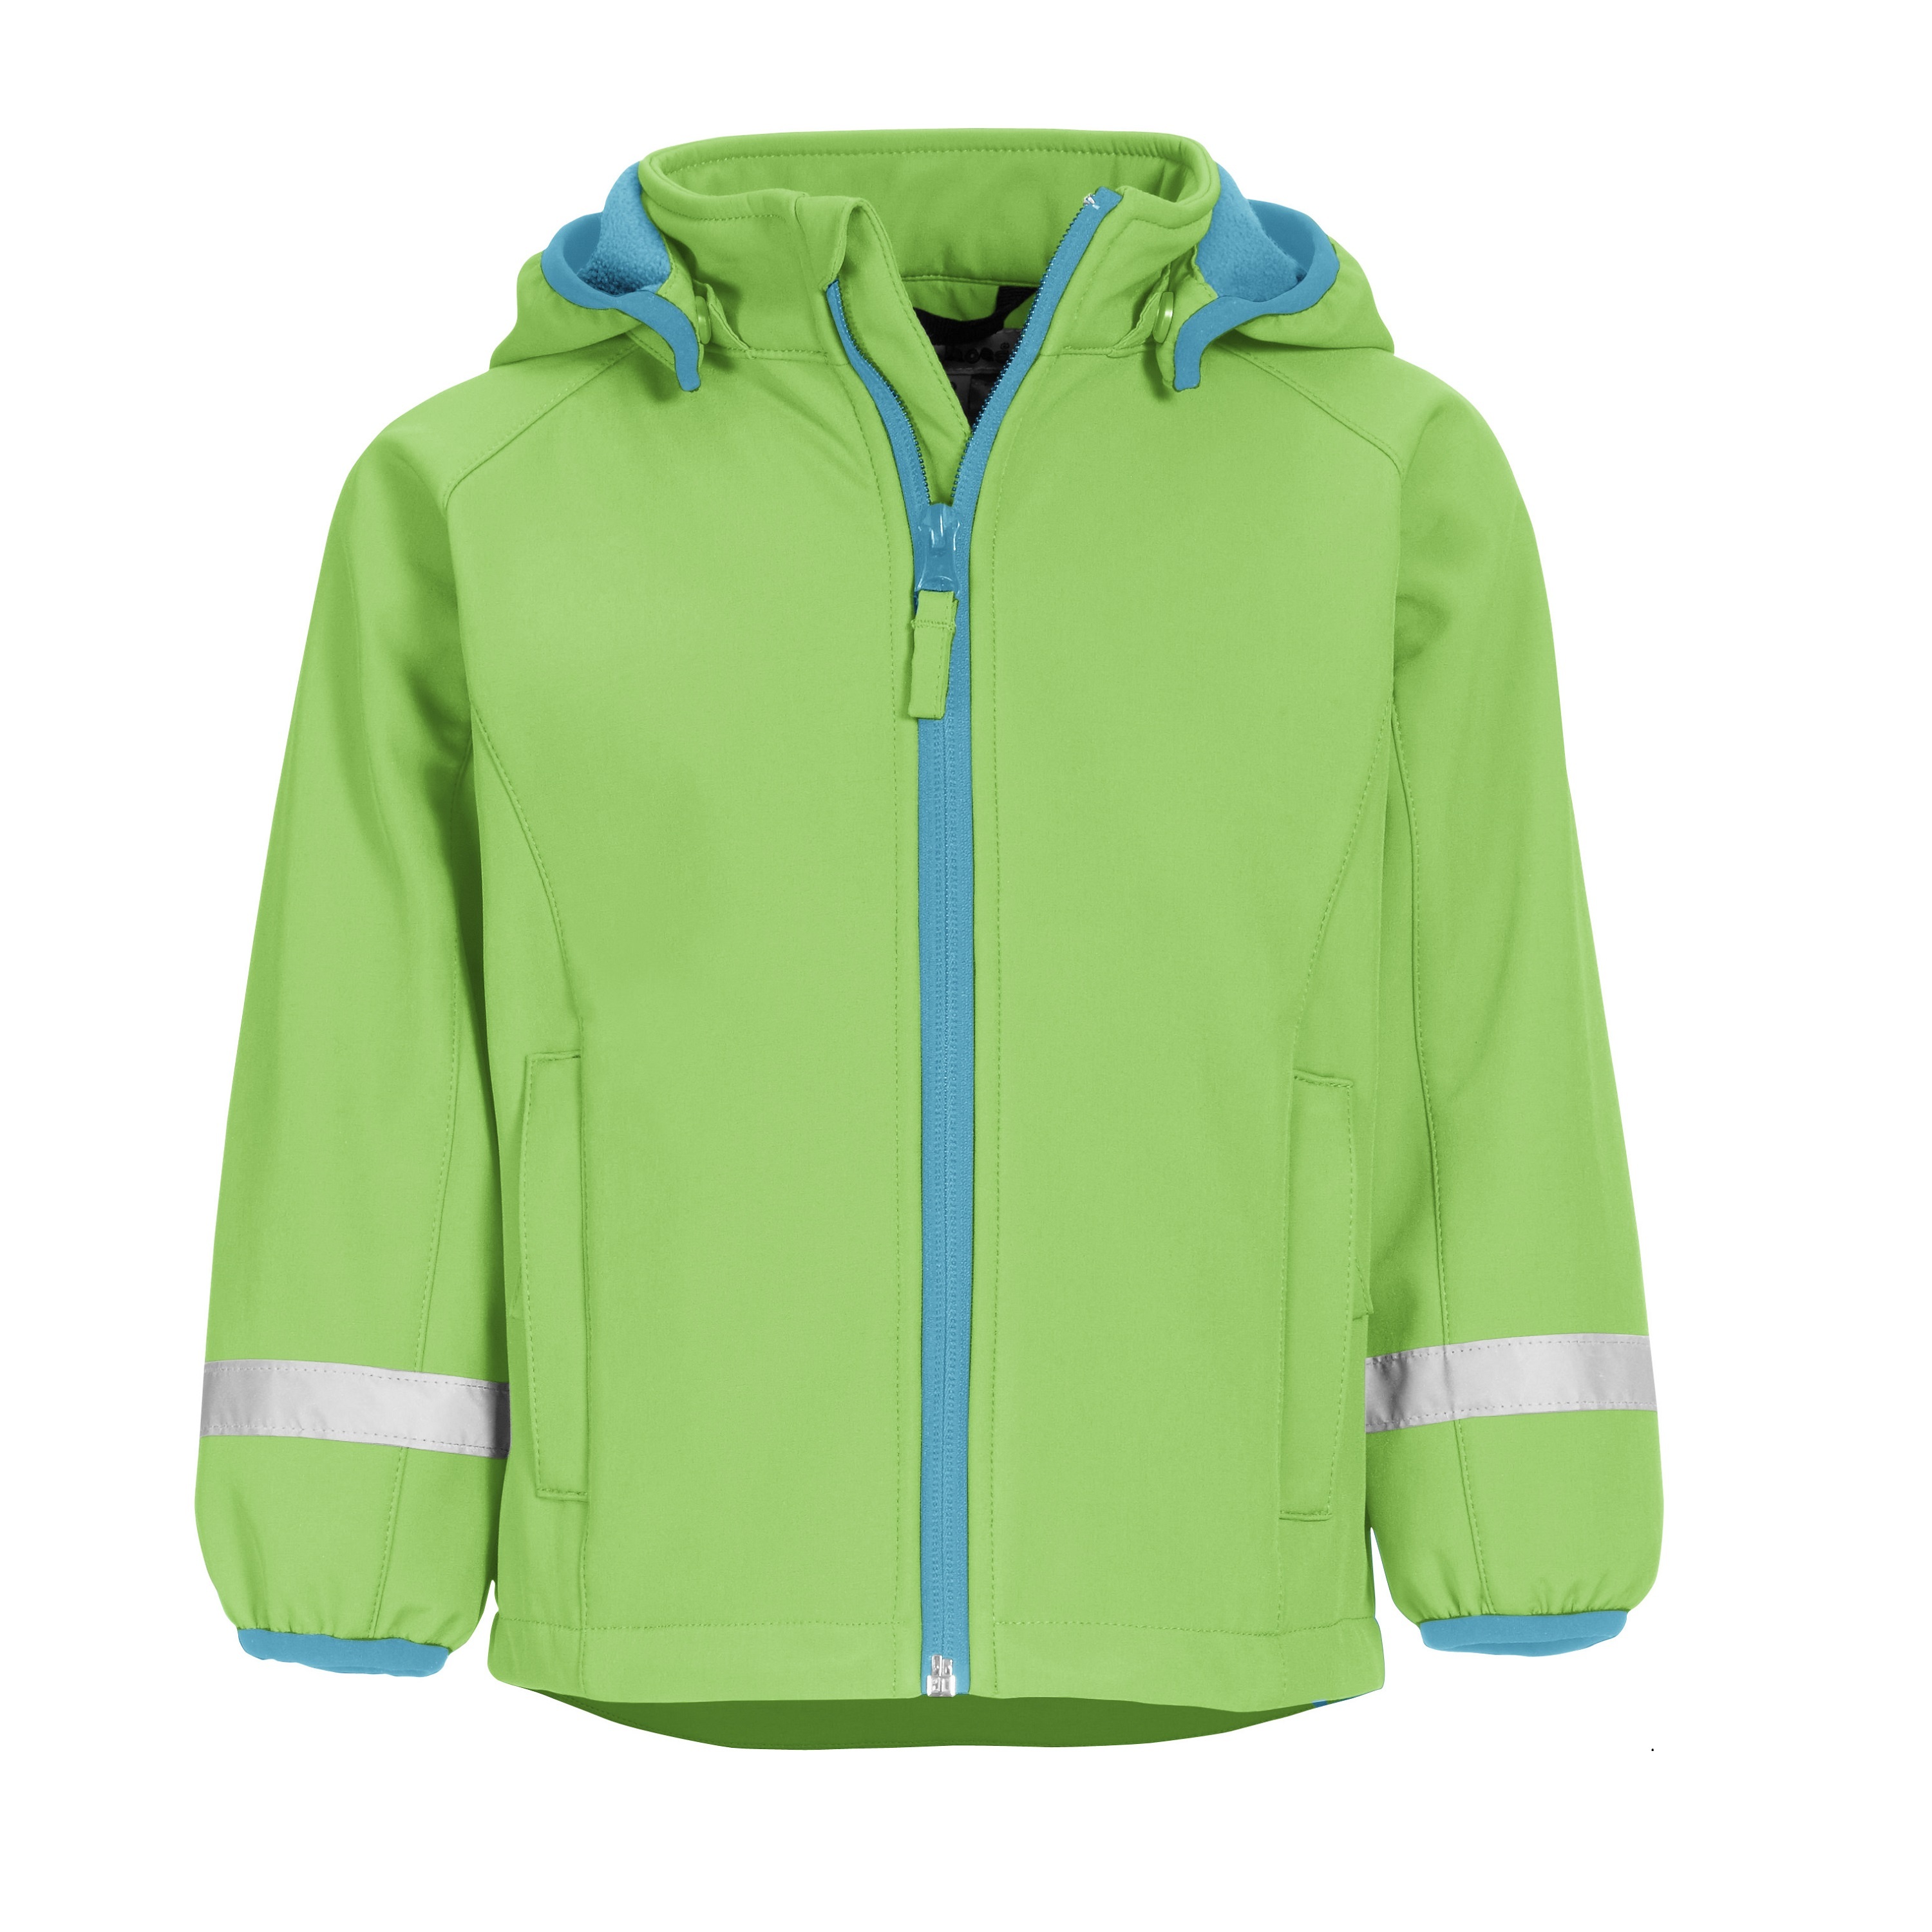 Куртка детская Playshoes 430110, зеленый, 98